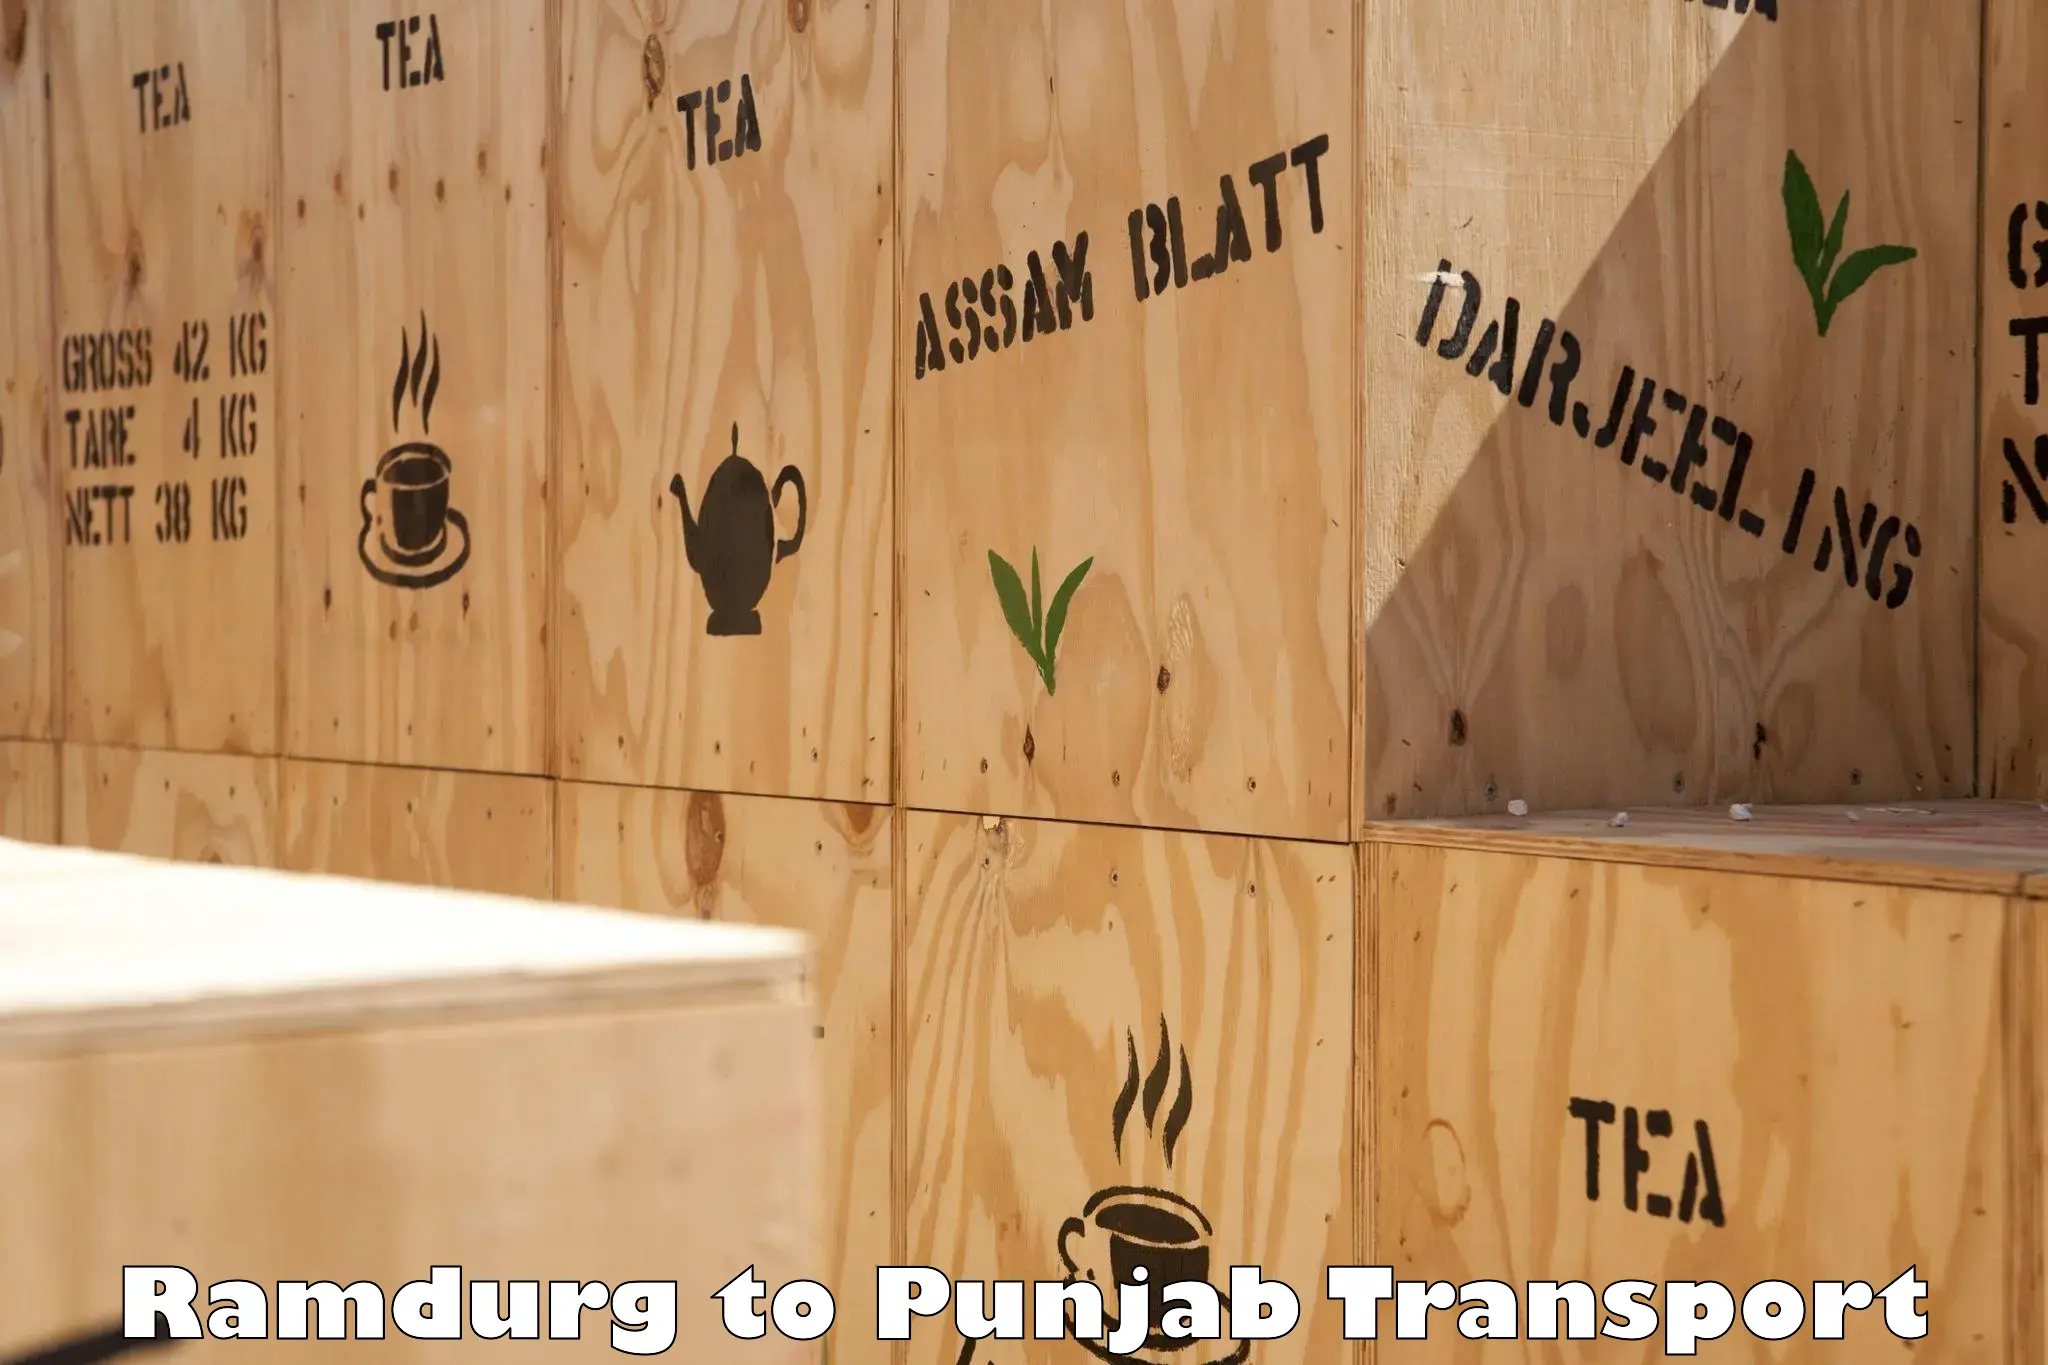 Furniture transport service Ramdurg to Punjab